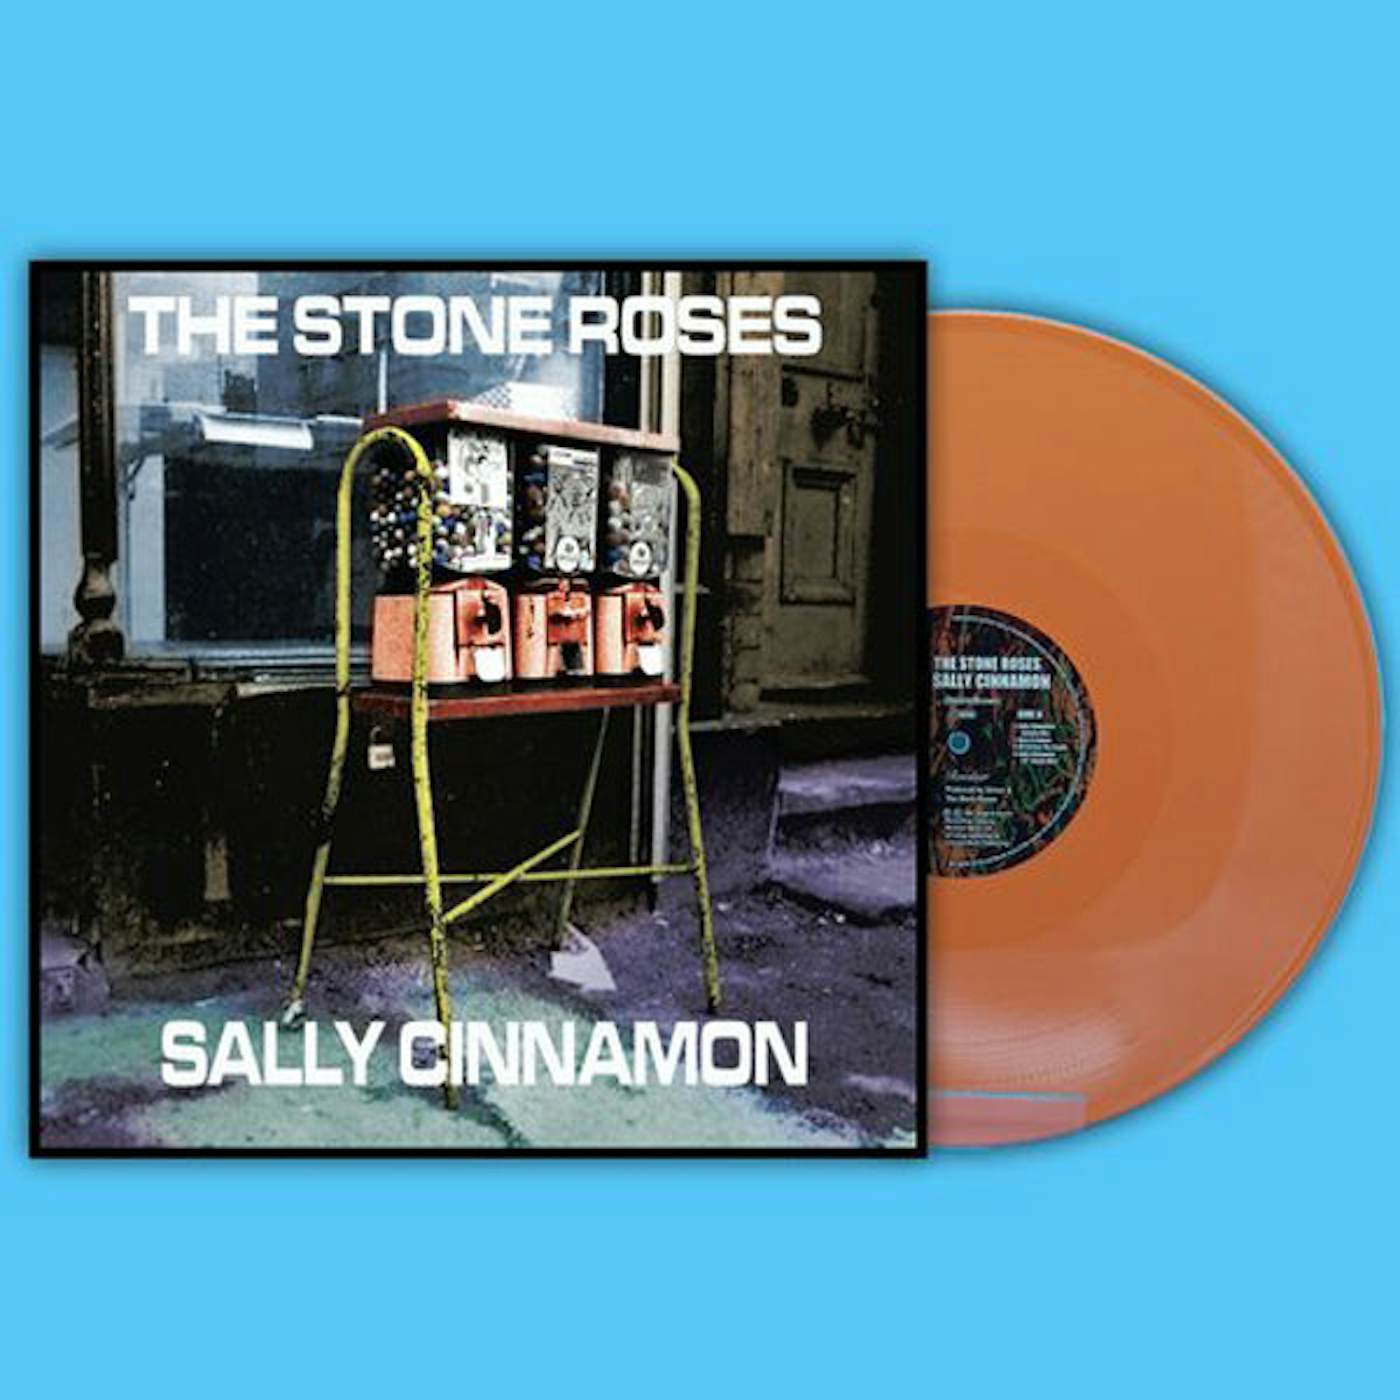 The Stone Roses LP - Sally Cinnamon + Live (Orange Vinyl)